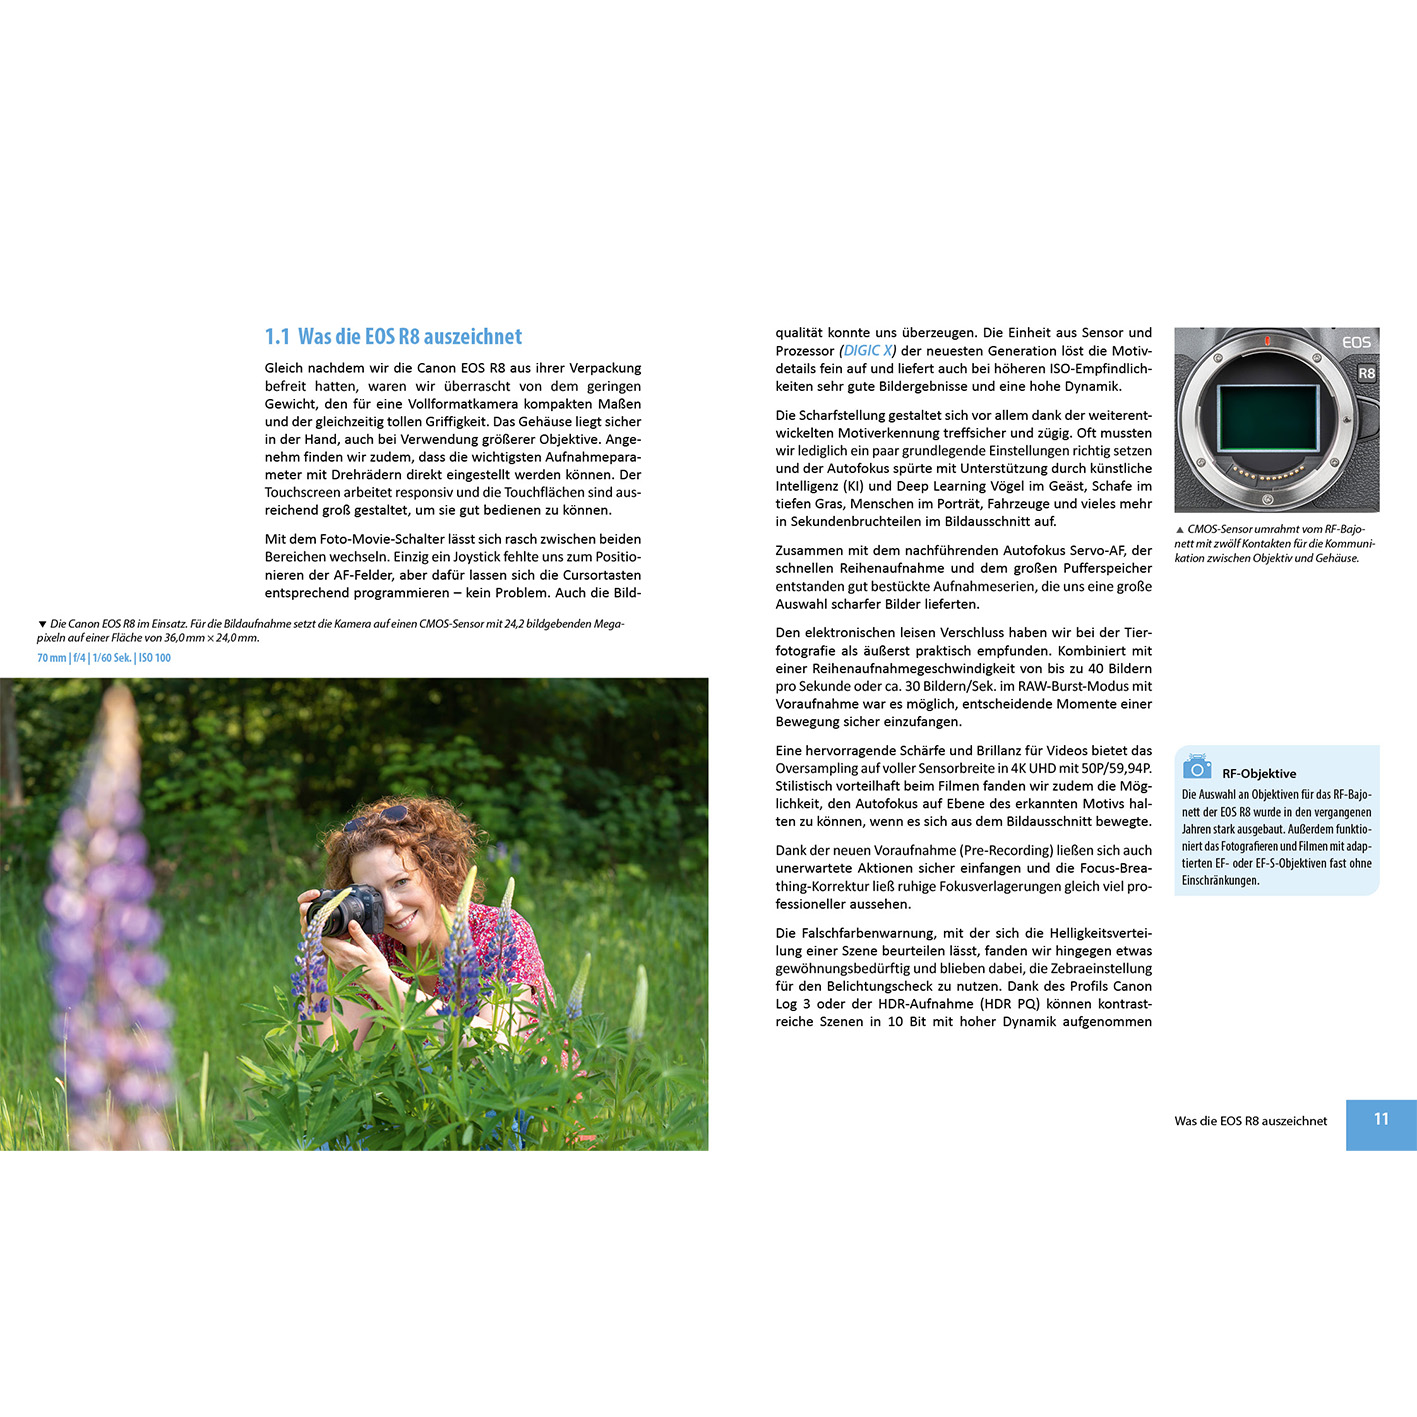 Das Ihrer Kamera R8 Praxisbuch umfangreiche Canon EOS zu -